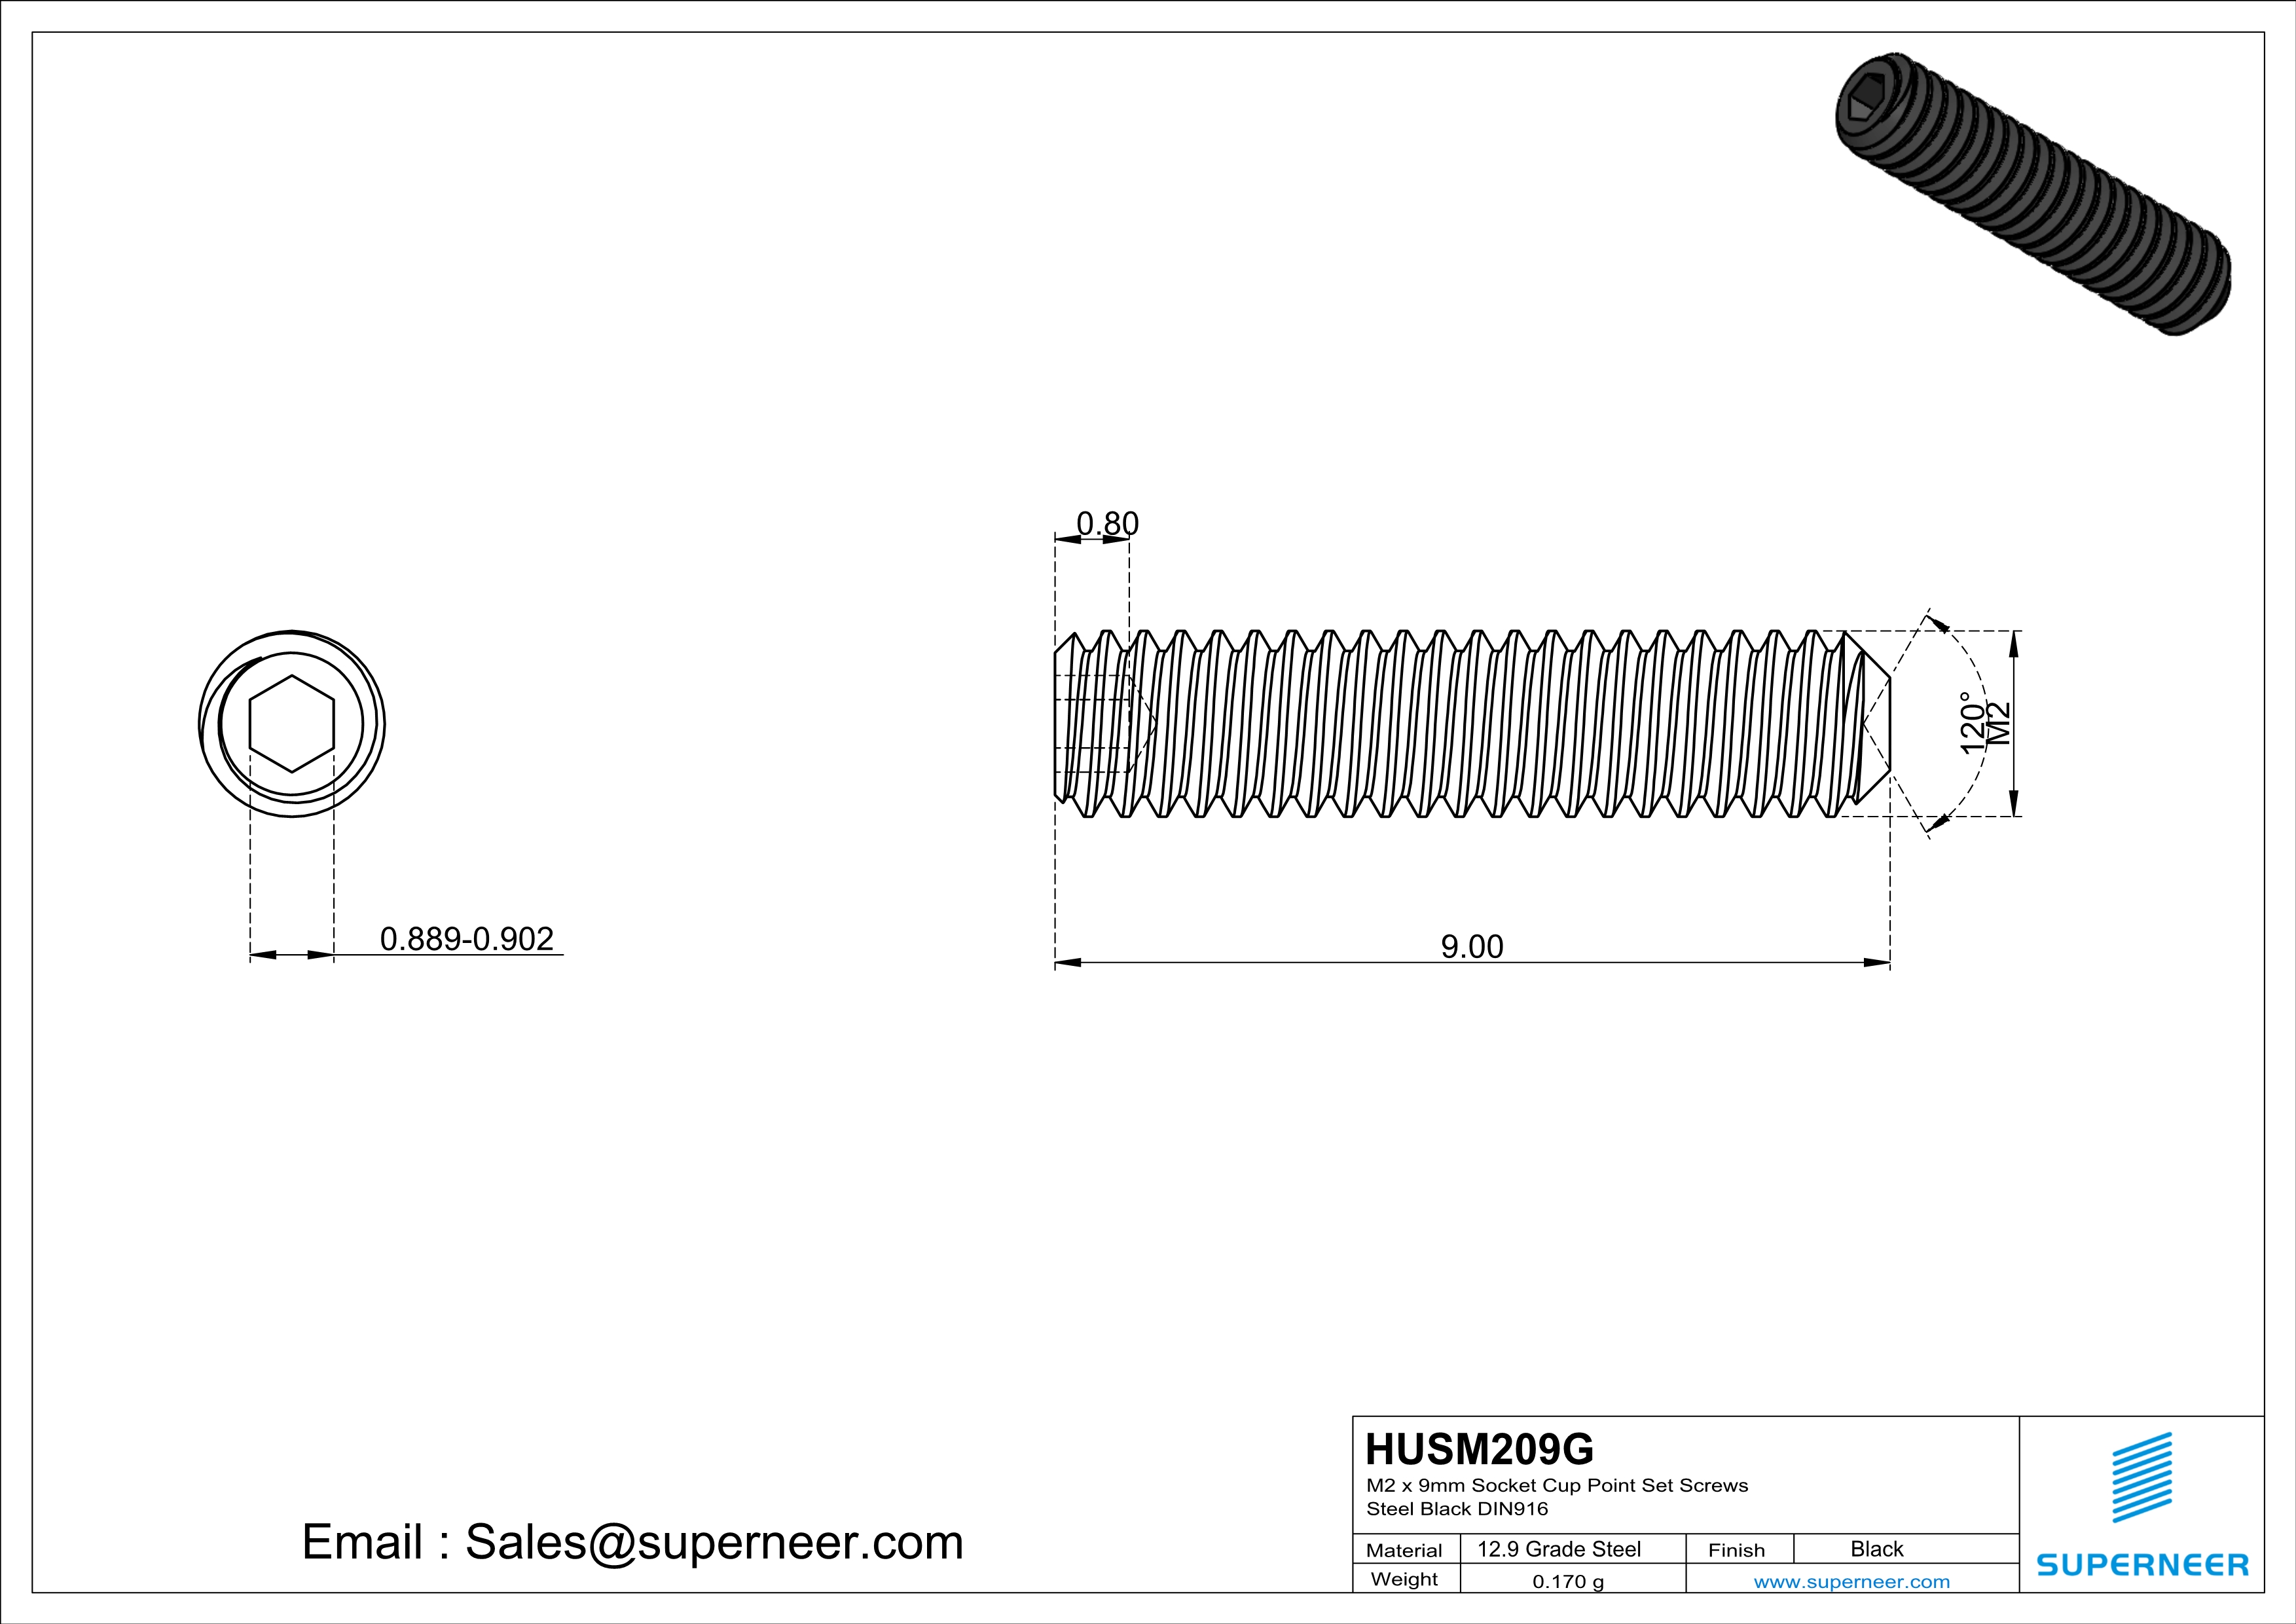 M2 x 9mm Socket Cup Point Set Screws 12.9 Carbon Steel Black DIN916